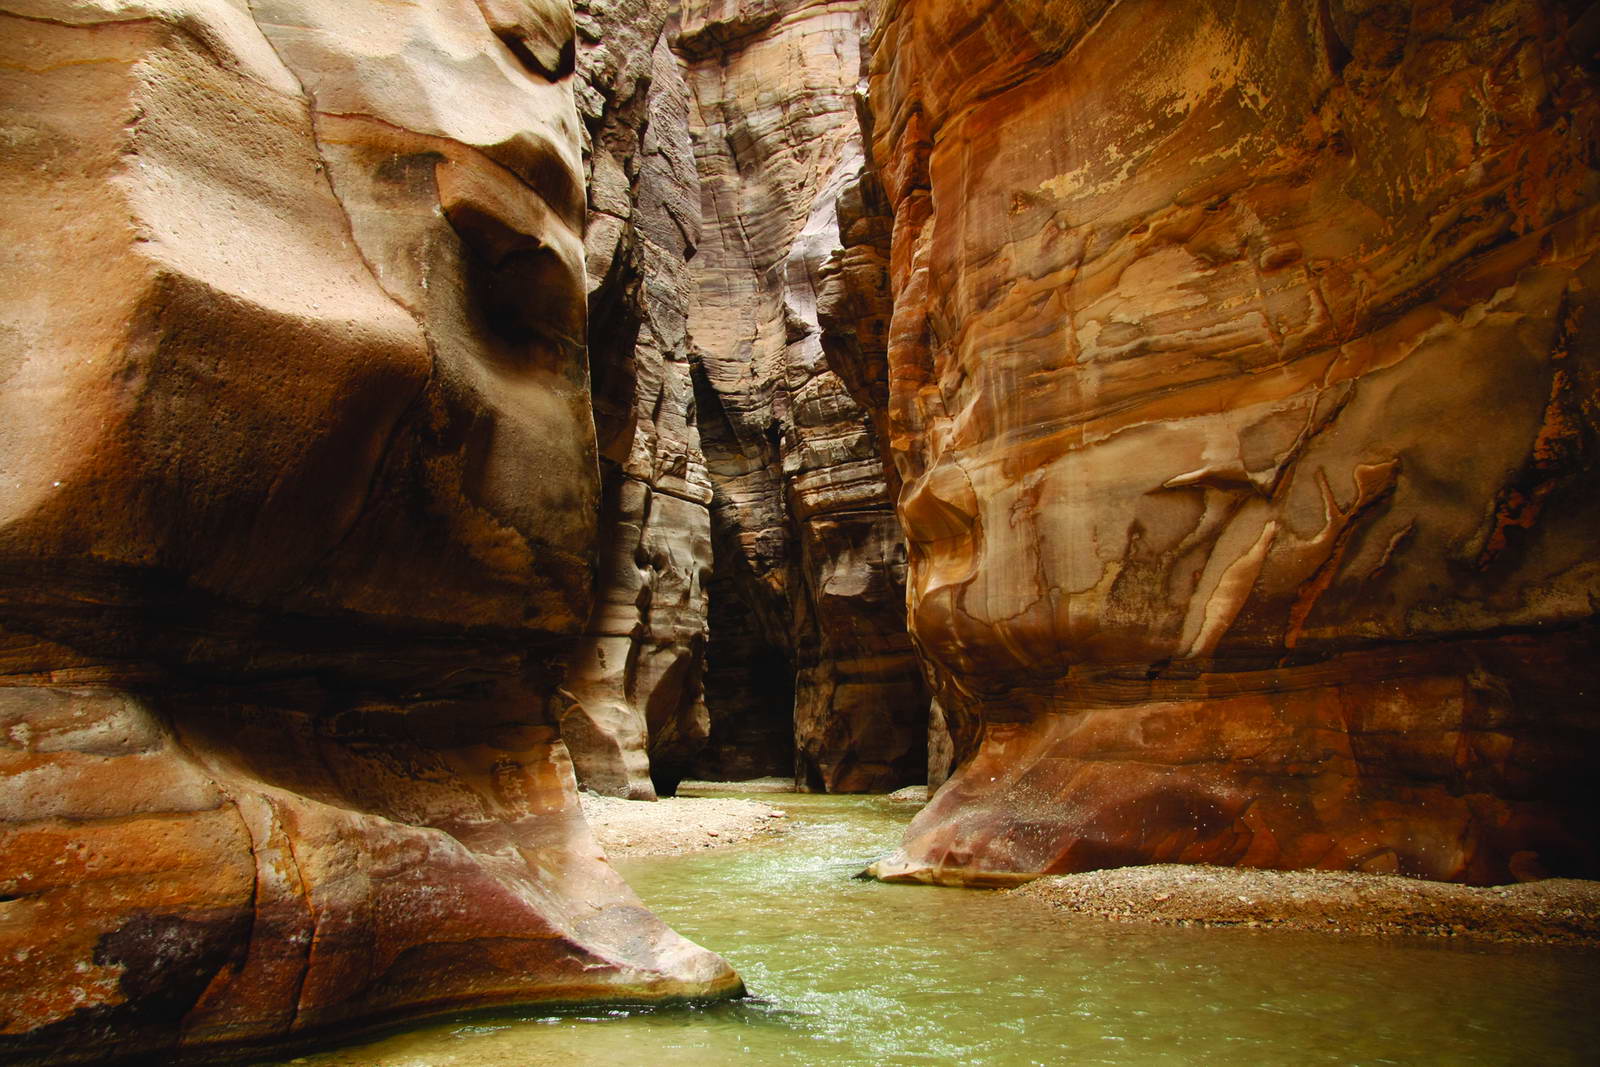 jordan nature reserves wadi mujib 13 20170502 1782384658